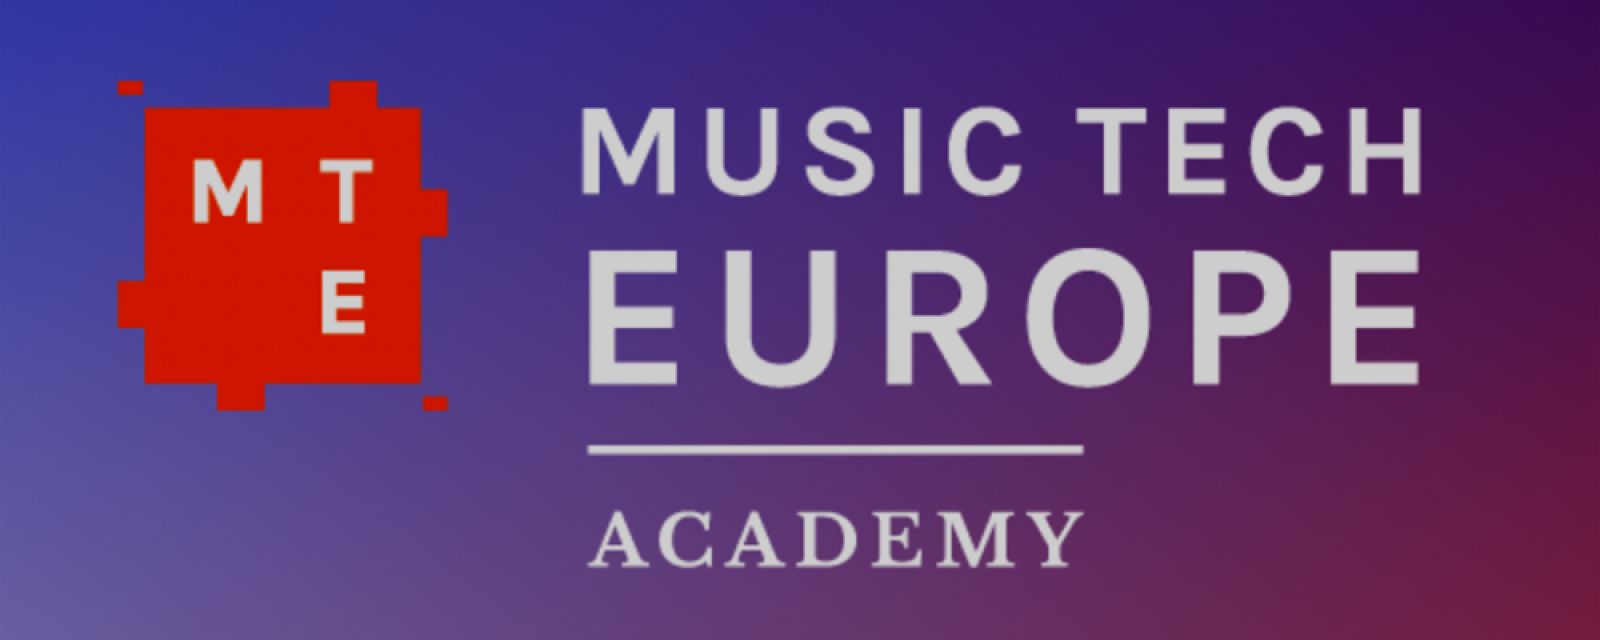 music-tech-europe-academy